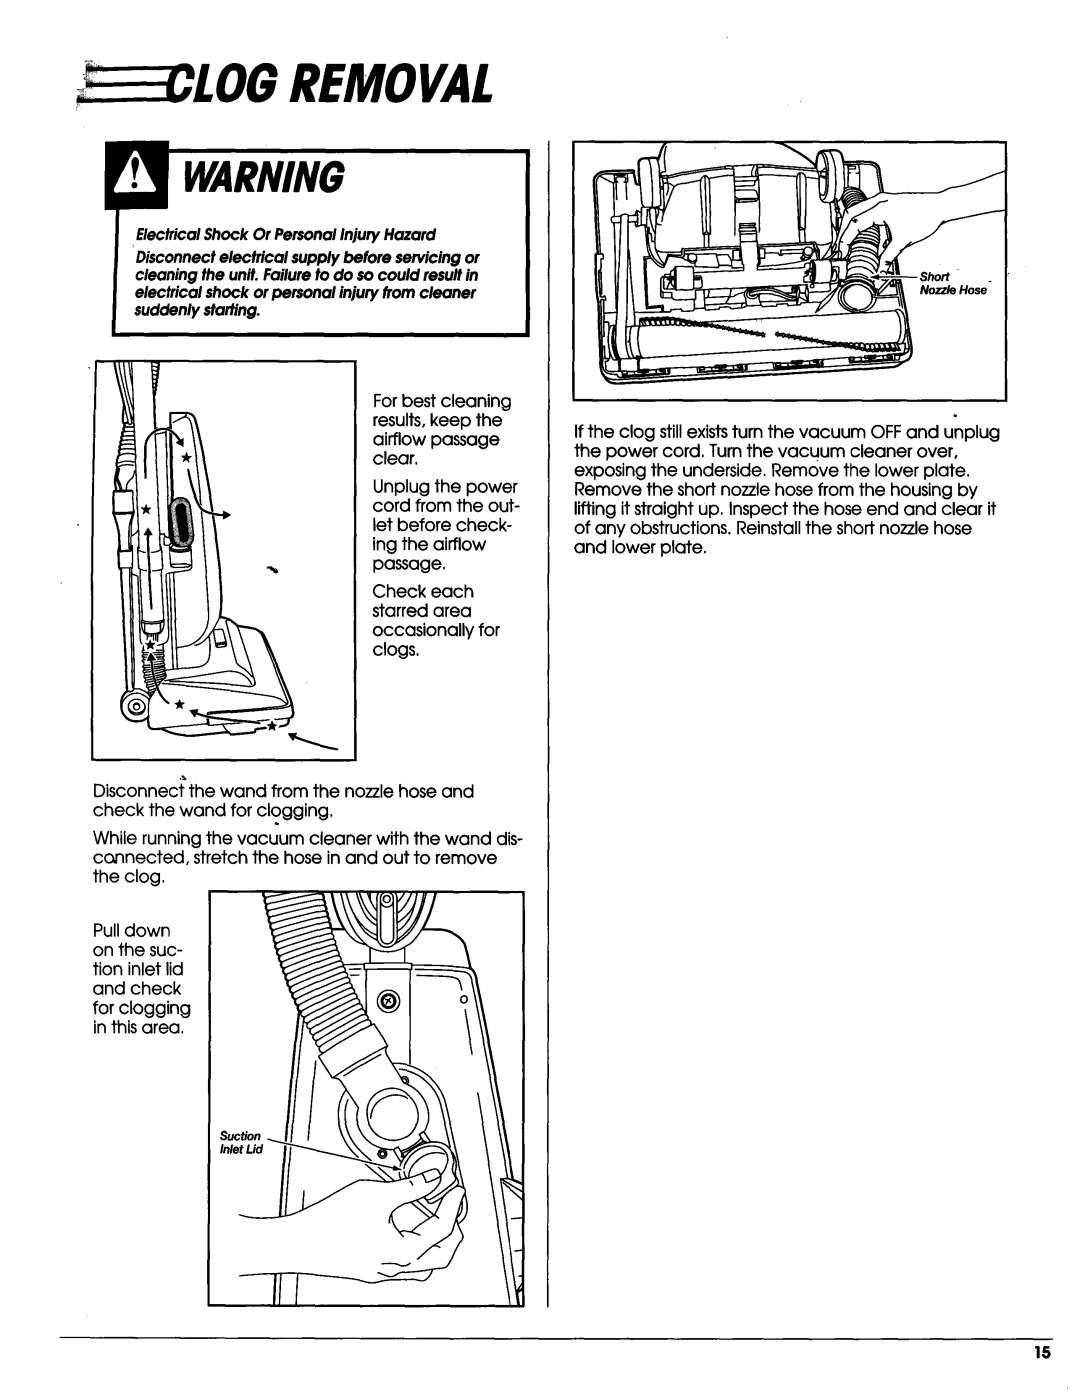 Sears Vacuum Cleaner owner manual Removal, ElectricalShock Or PersonalInjuryHazard 